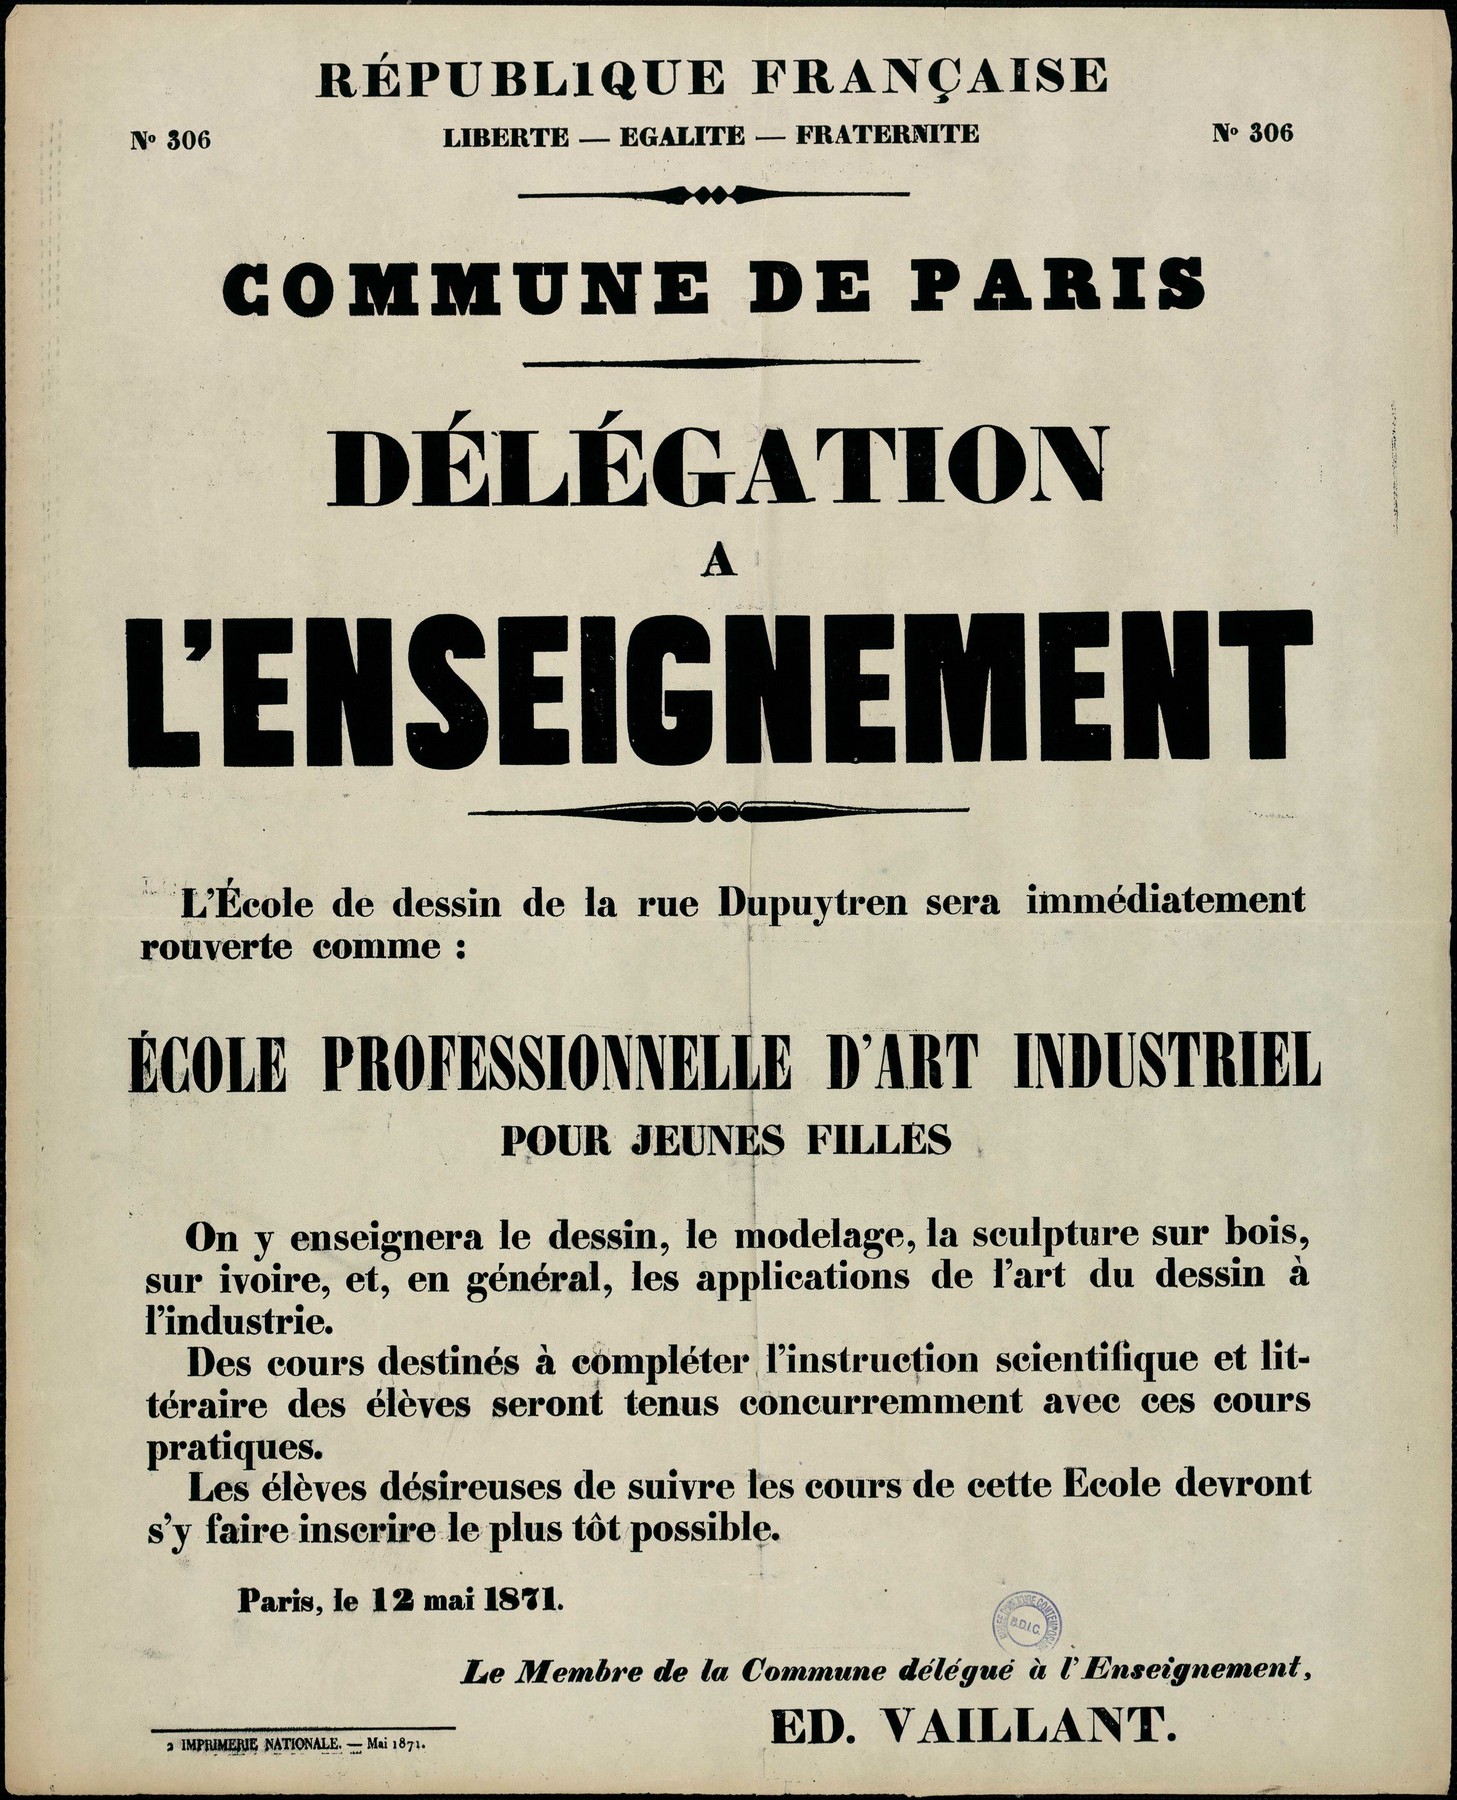 Affiche de la Commune de Paris N° 306 du 12 mai 1871 - Délégation Enseignement - Vaillant